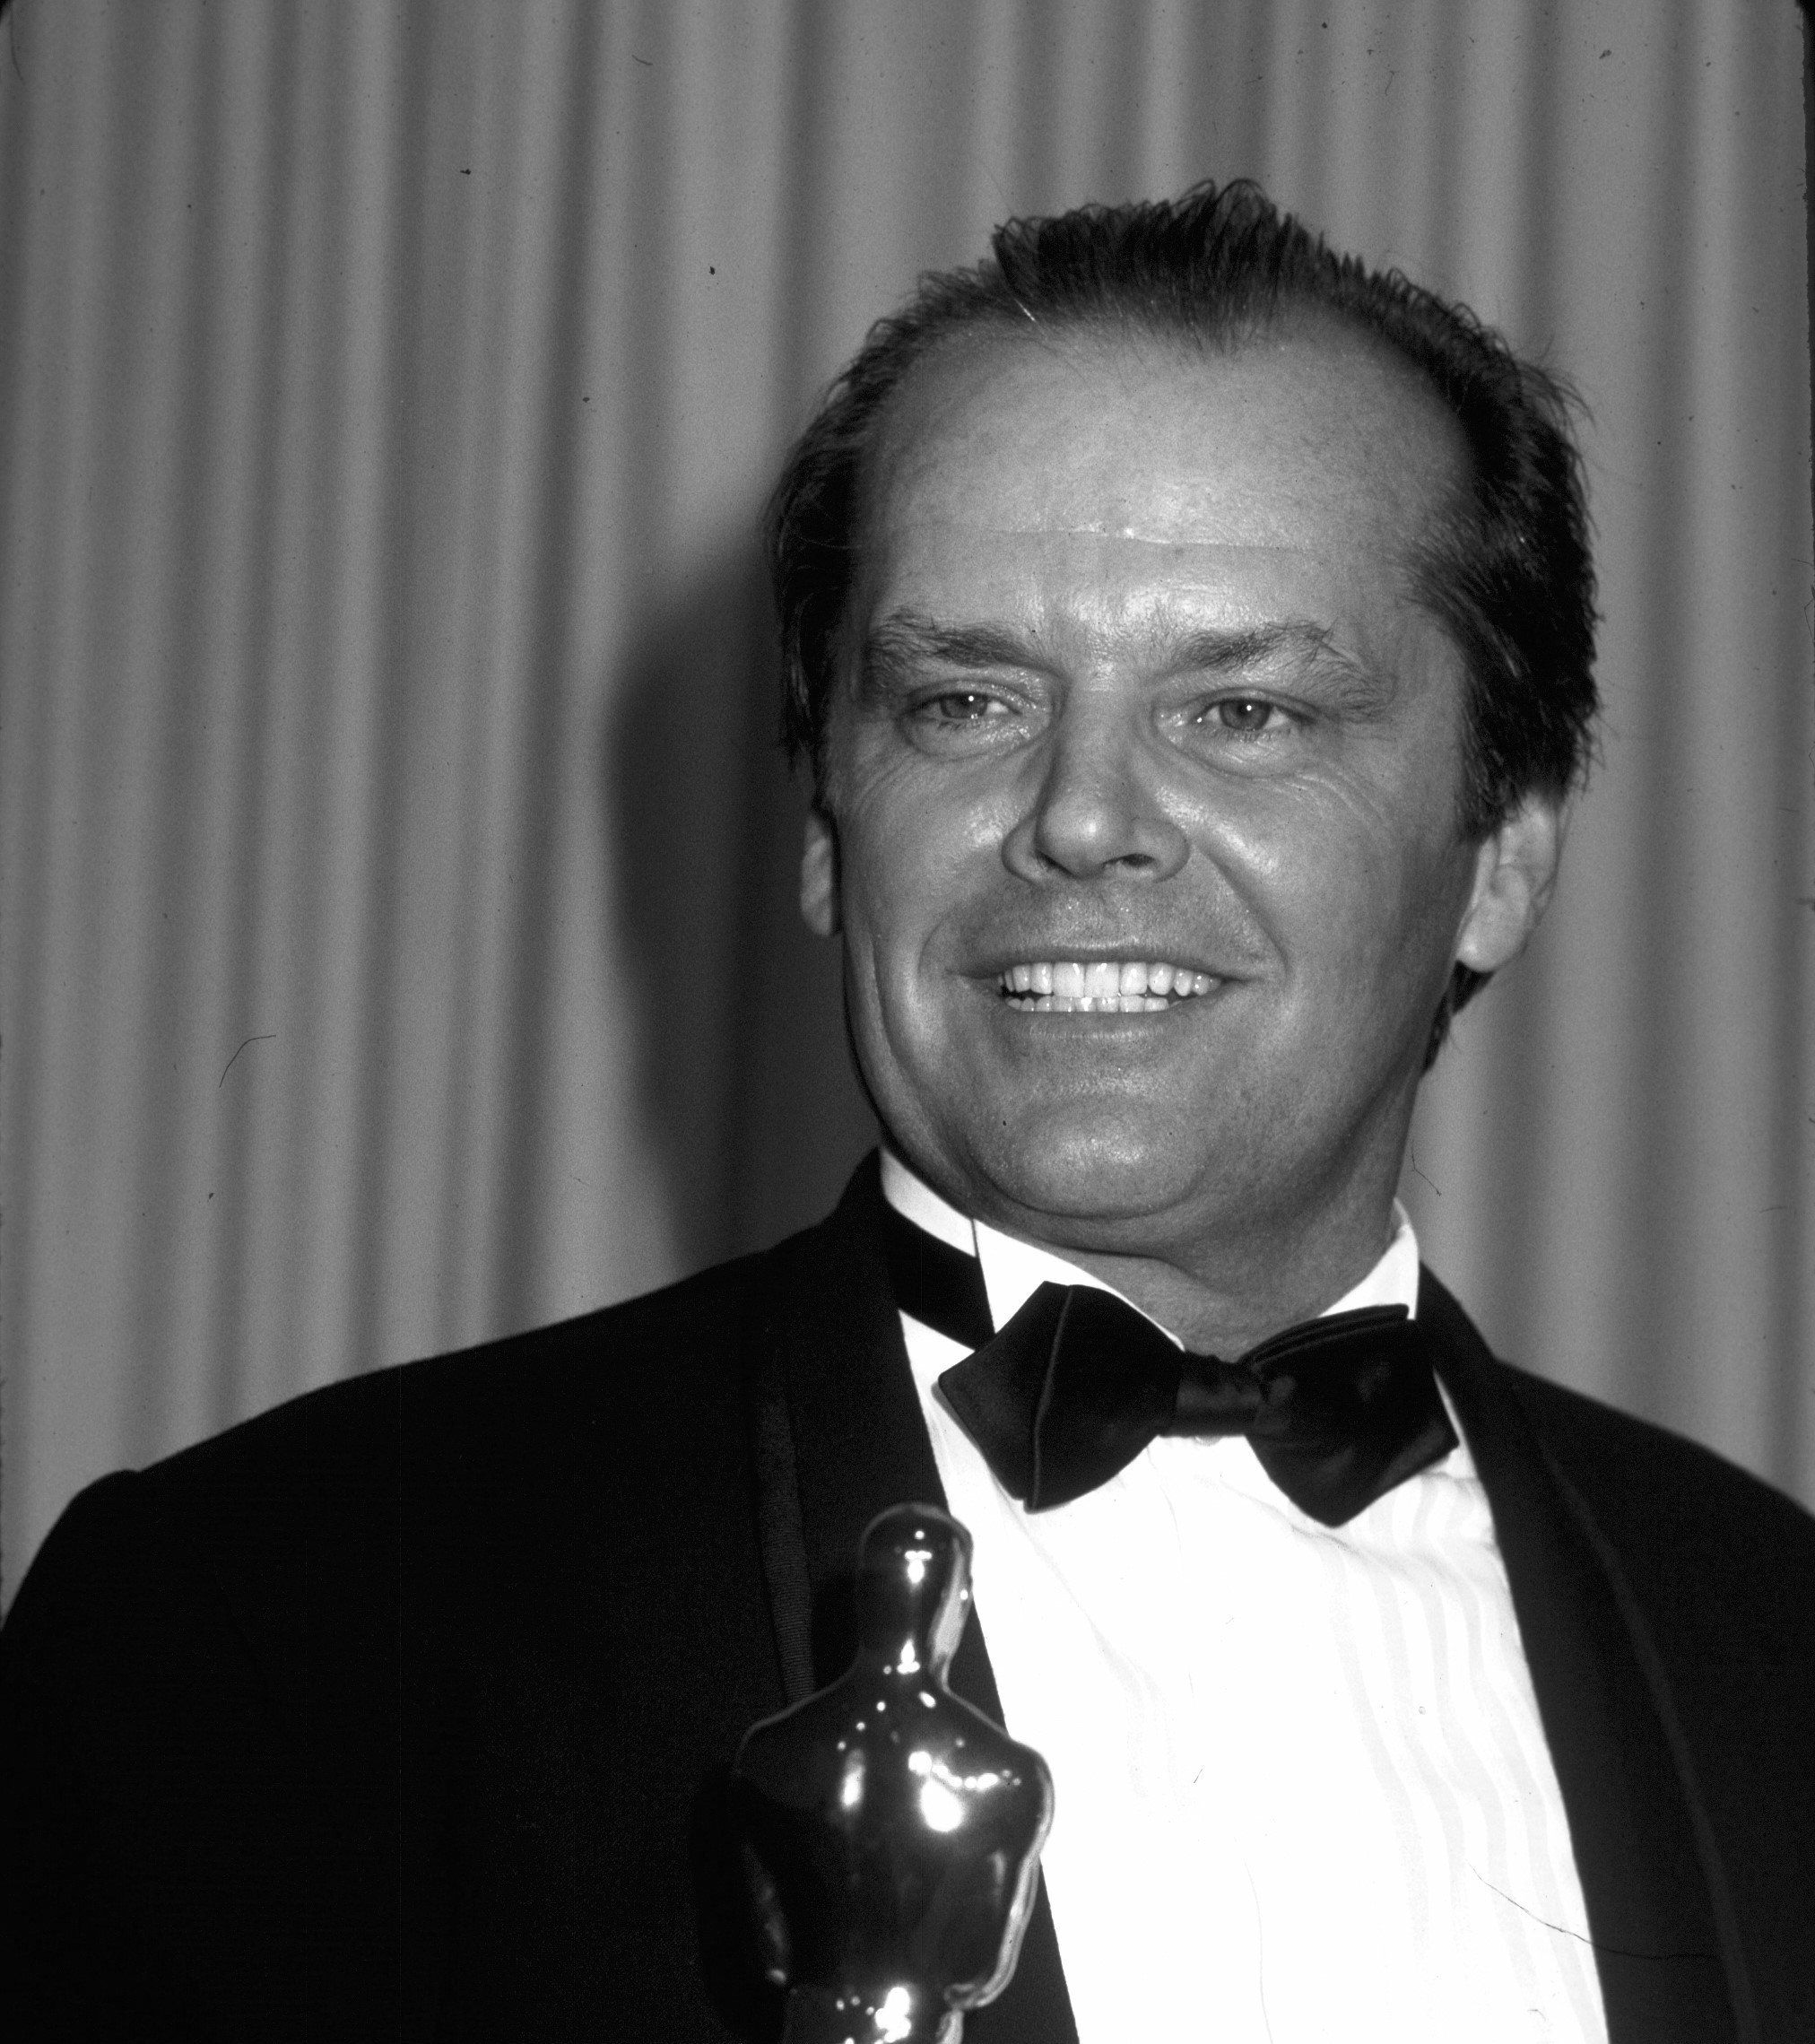 Jack Nicholson holds an Oscar and wears a tuxedo.